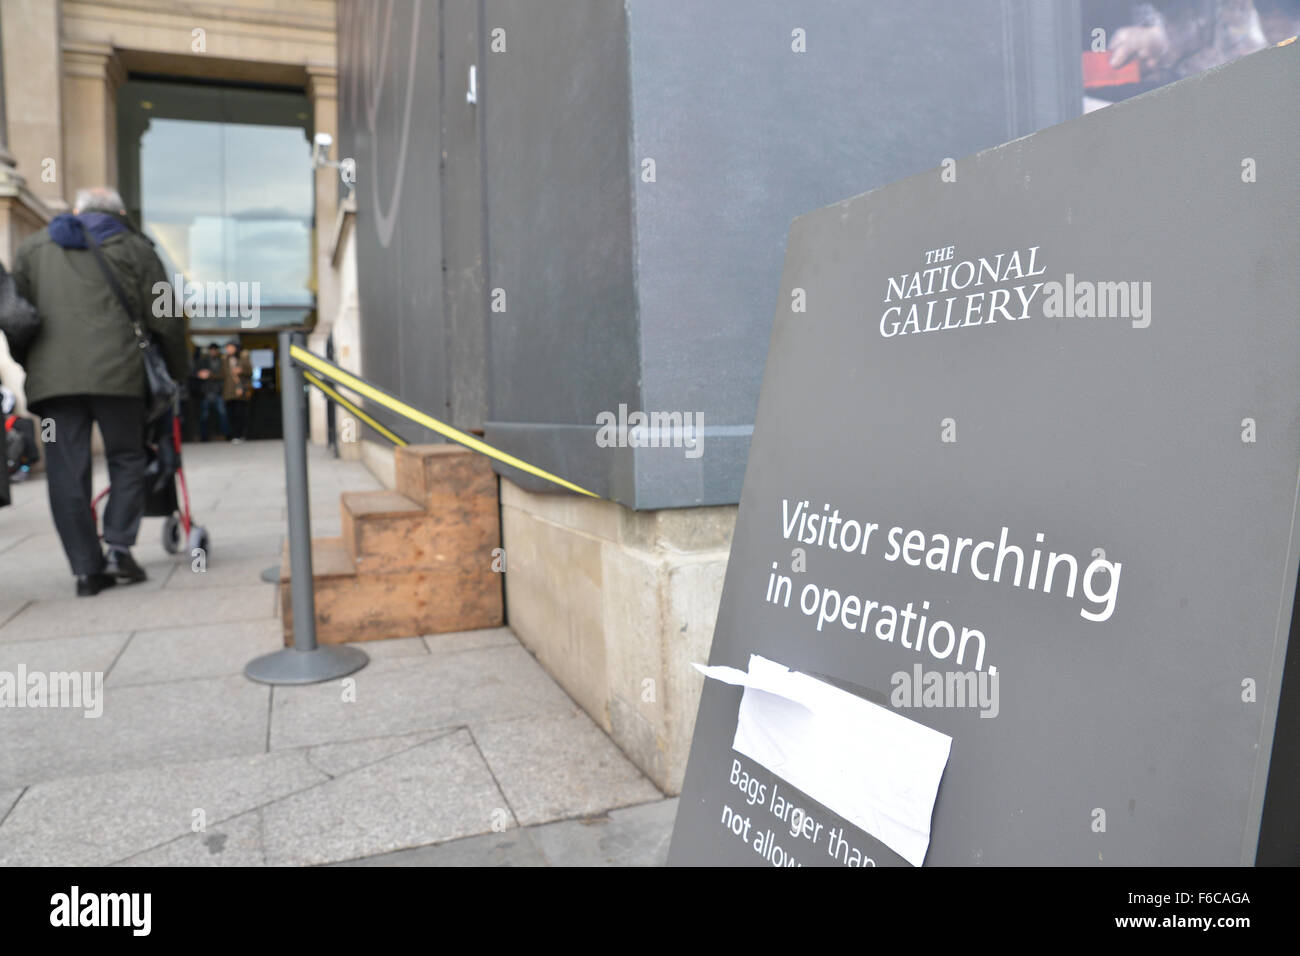 Trafalgar Square, Londra, Regno Unito. Il 16 novembre 2015. In borsa le ricerche a livello nazionale e gallerie ritratto dopo la Parigi degli attacchi. Foto Stock